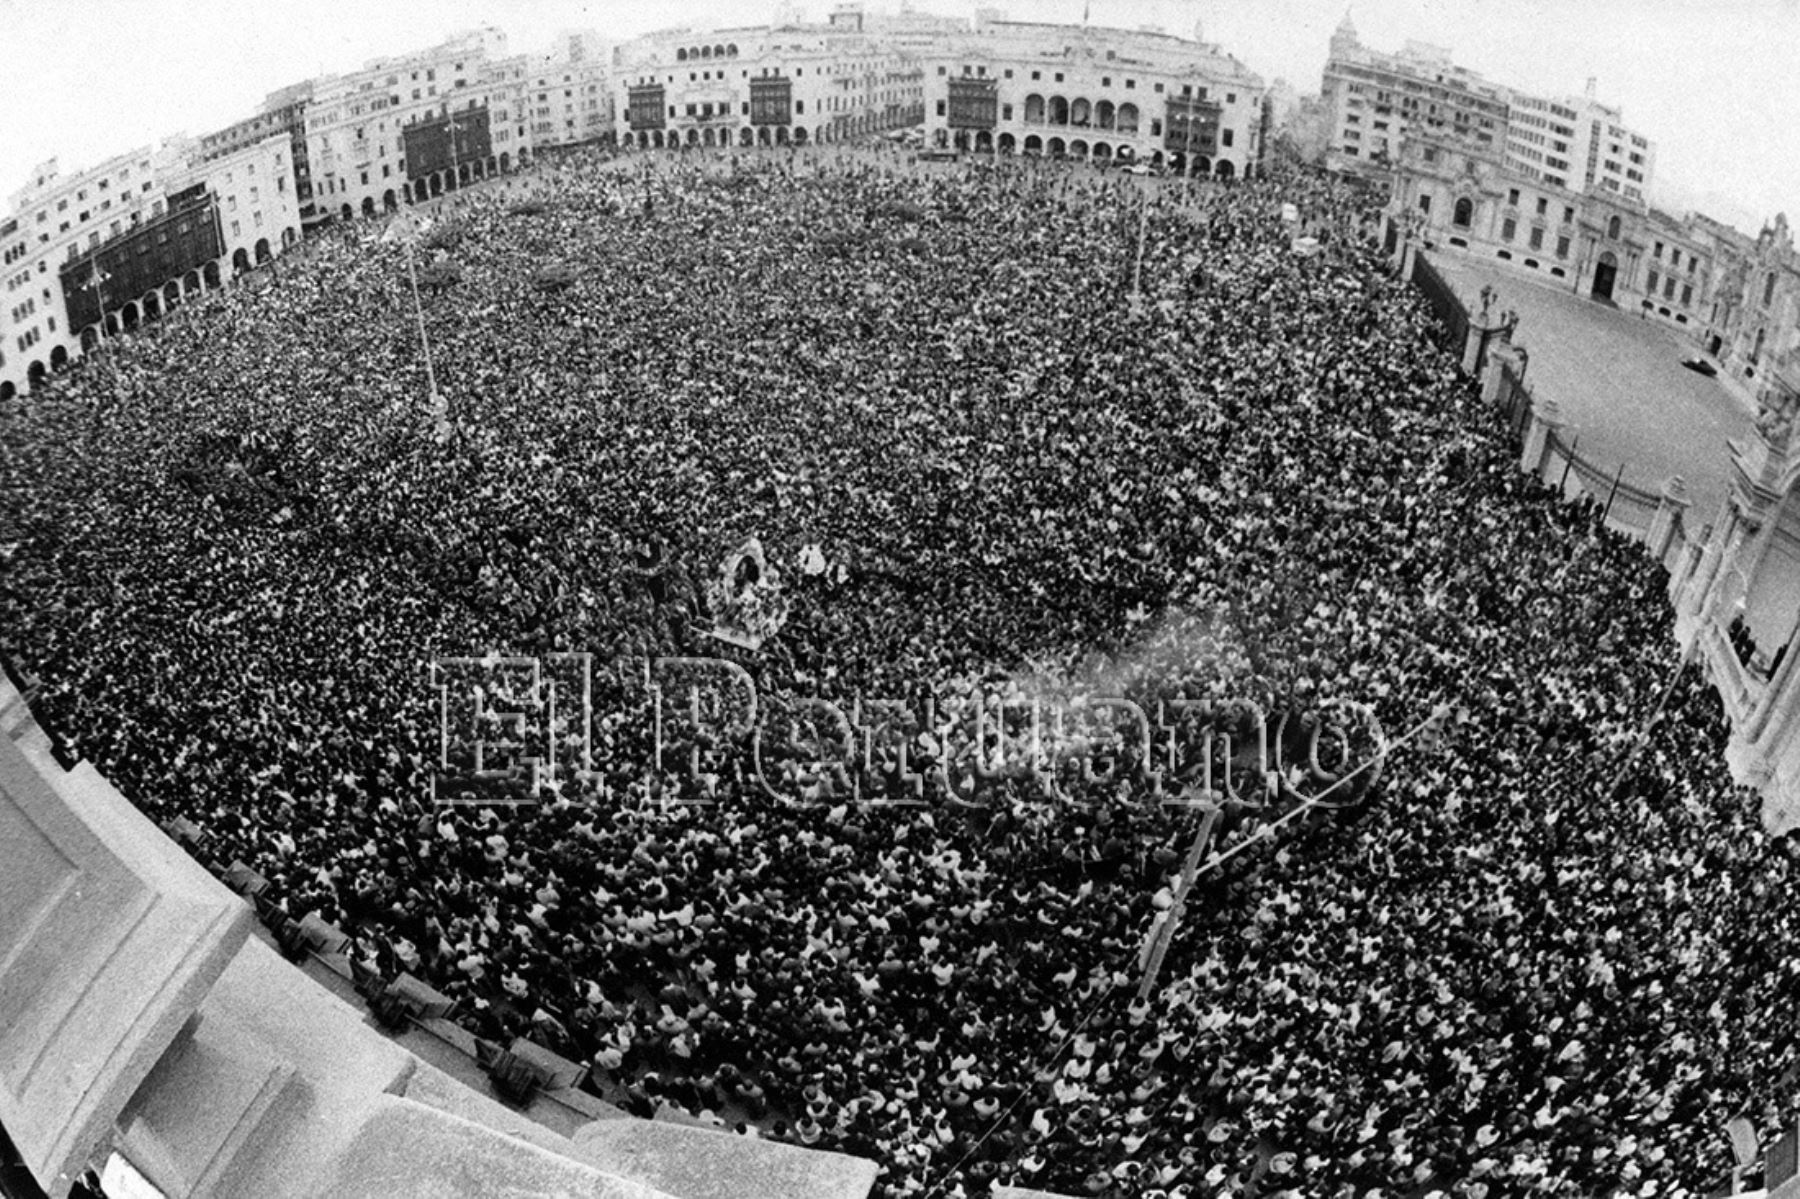 Lima - 18 octubre 1976. Procesión del Señor de los Milagros en la plaza de armas de Lima. Foto: Archivo Histórico El Peruano / Rolando Ángeles